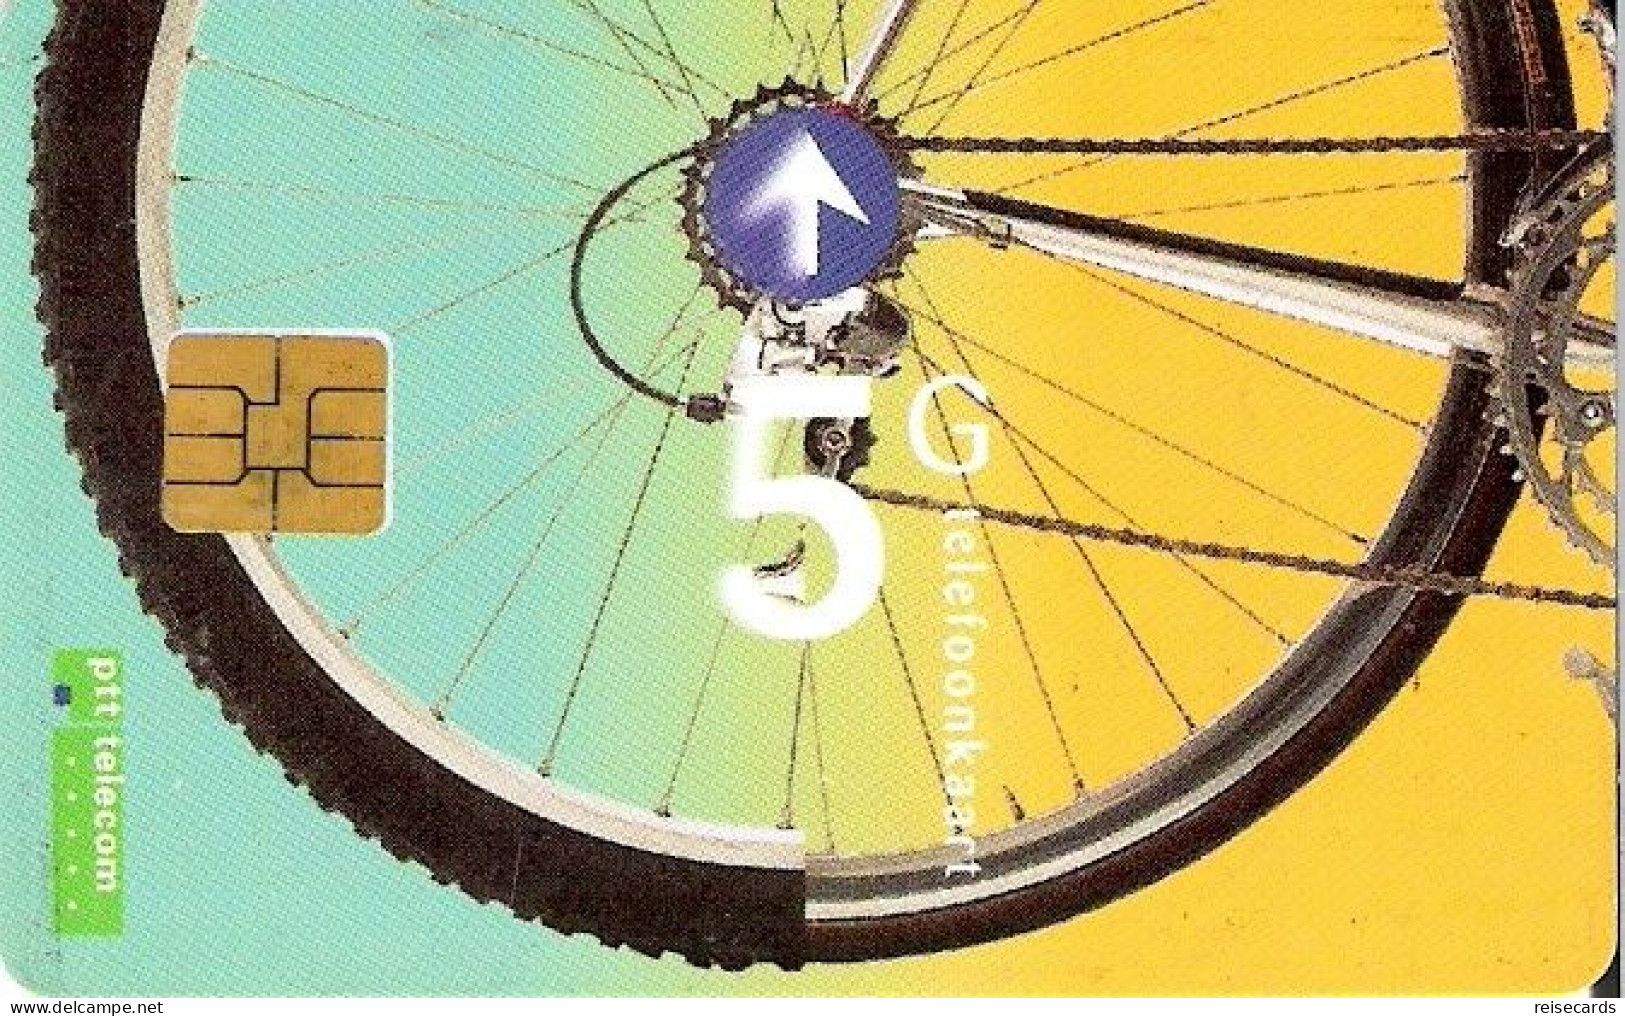 Netherlands: Ptt Telecom - 1995 Bike - Public